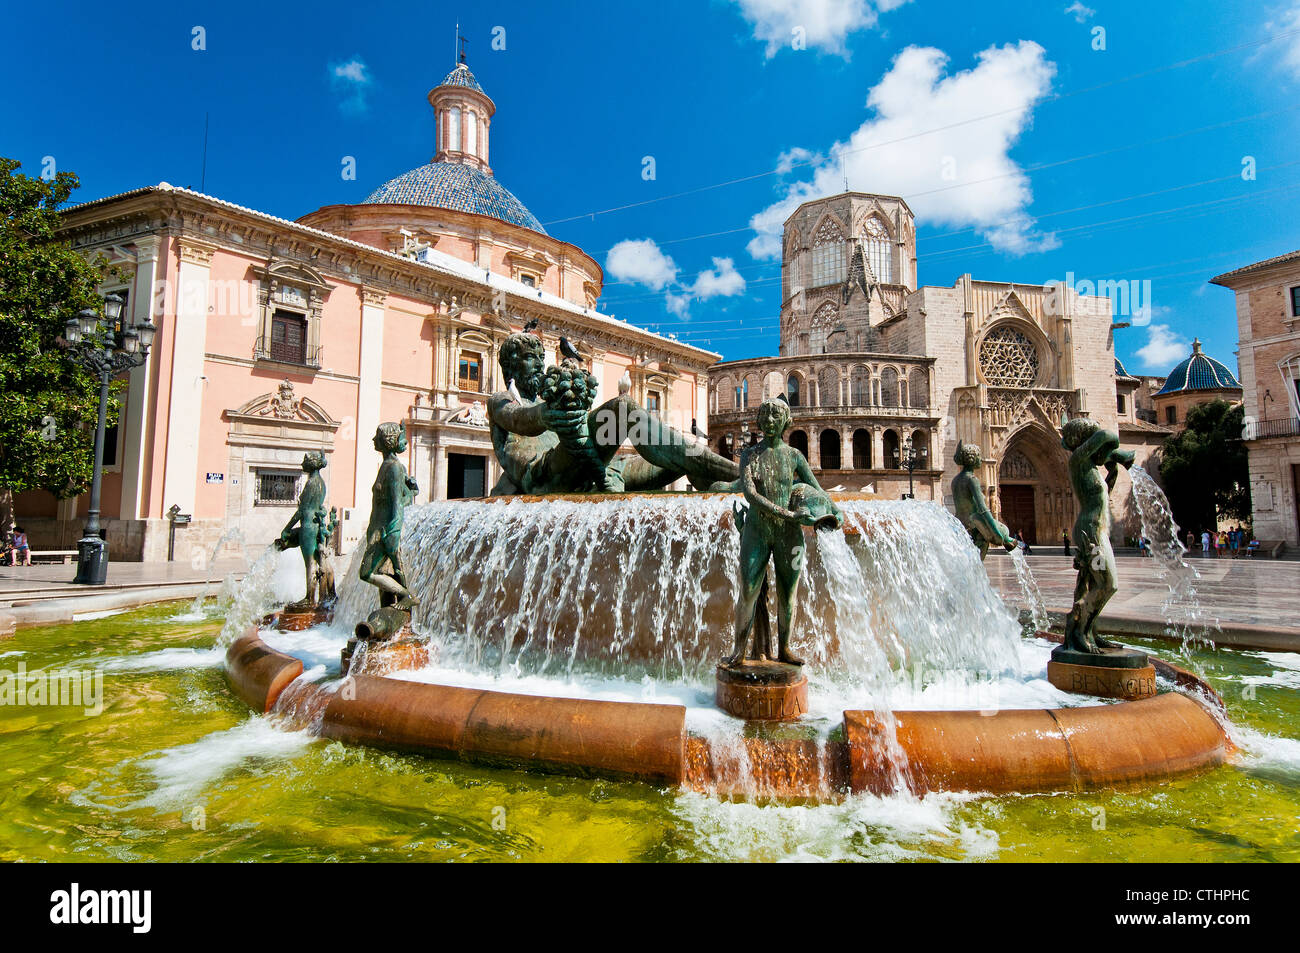 Turia fountain, Plaza de la Virgen, Valencia, Spain Stock Photo